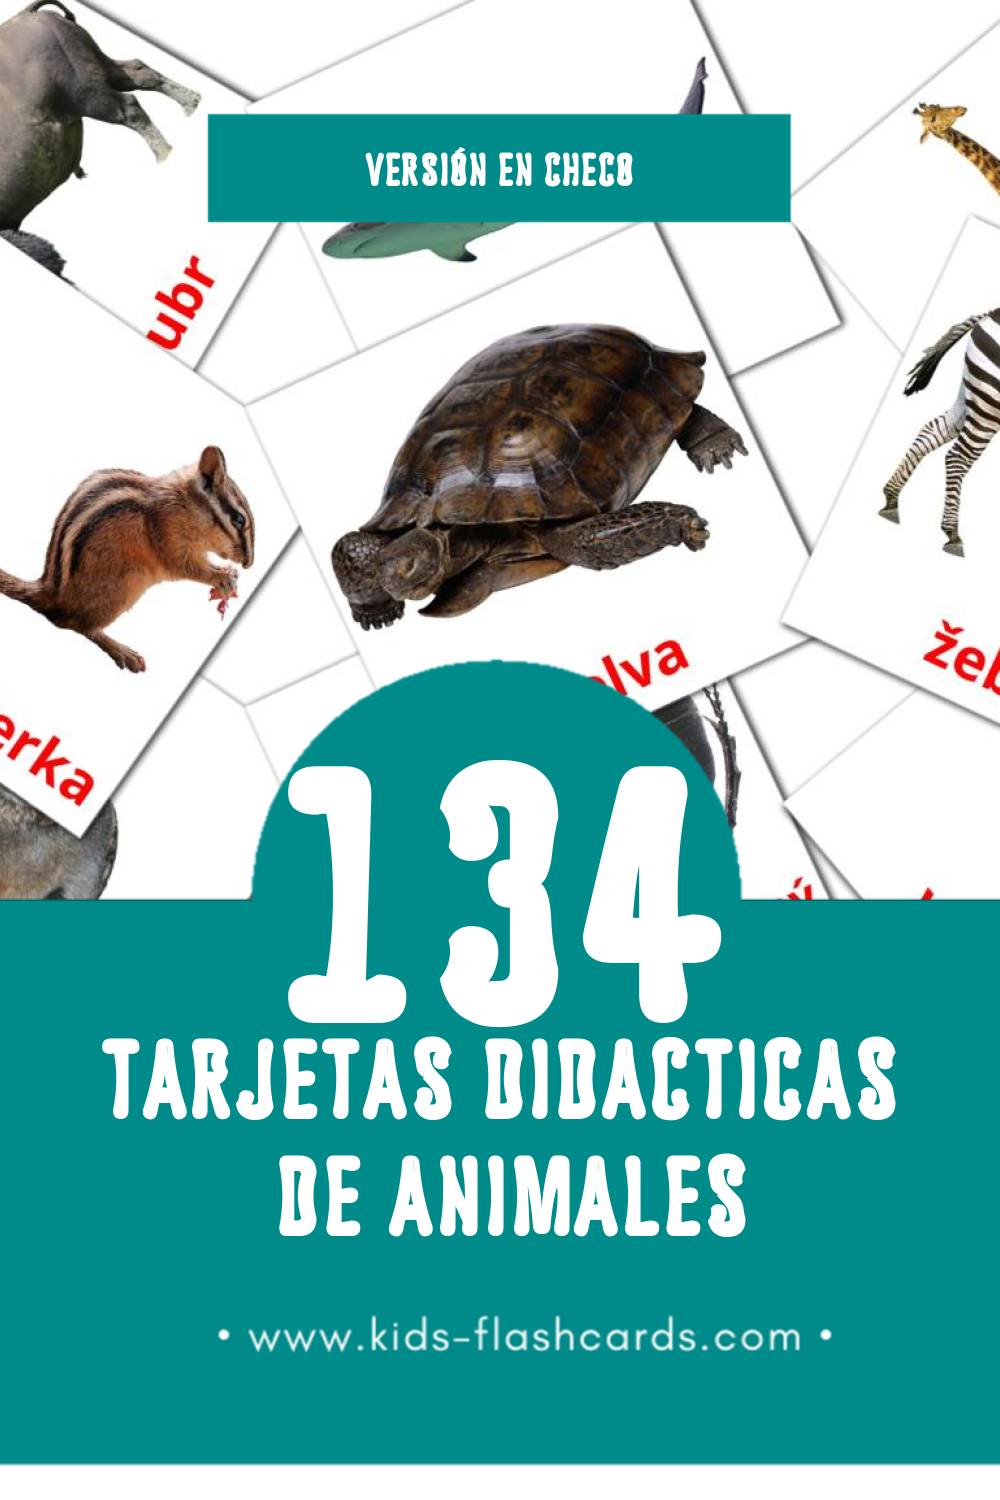 Tarjetas visuales de Zvířata para niños pequeños (120 tarjetas en Checo)